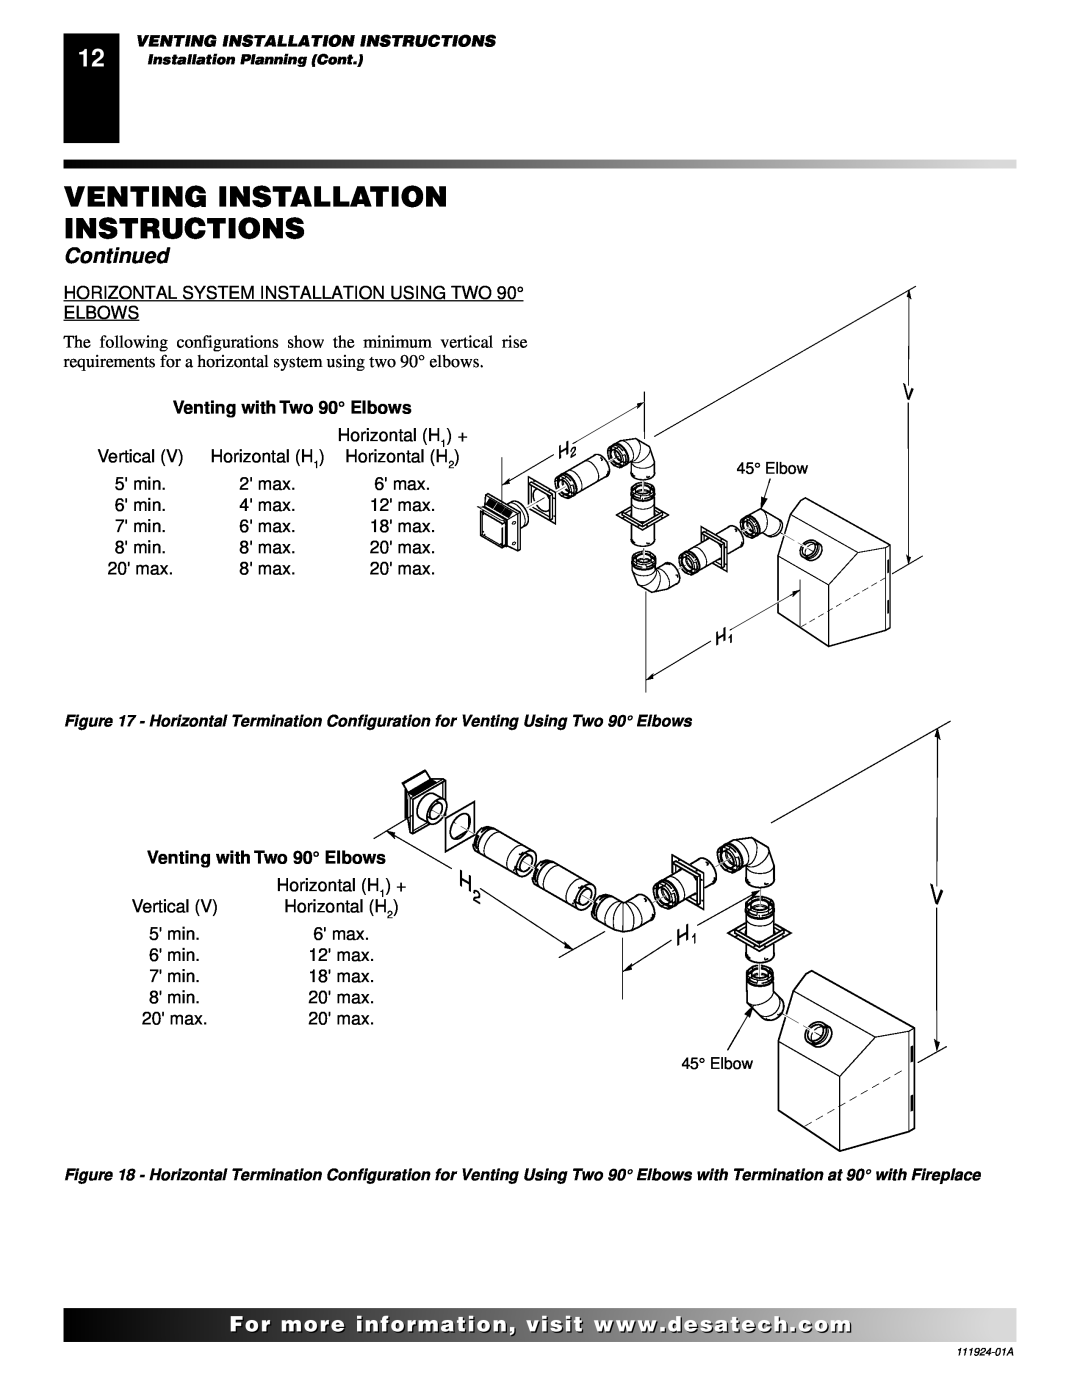 Desa K36EP, K36EN installation manual Venting Installation Instructions, Continued, Venting with Two 90 Elbows 